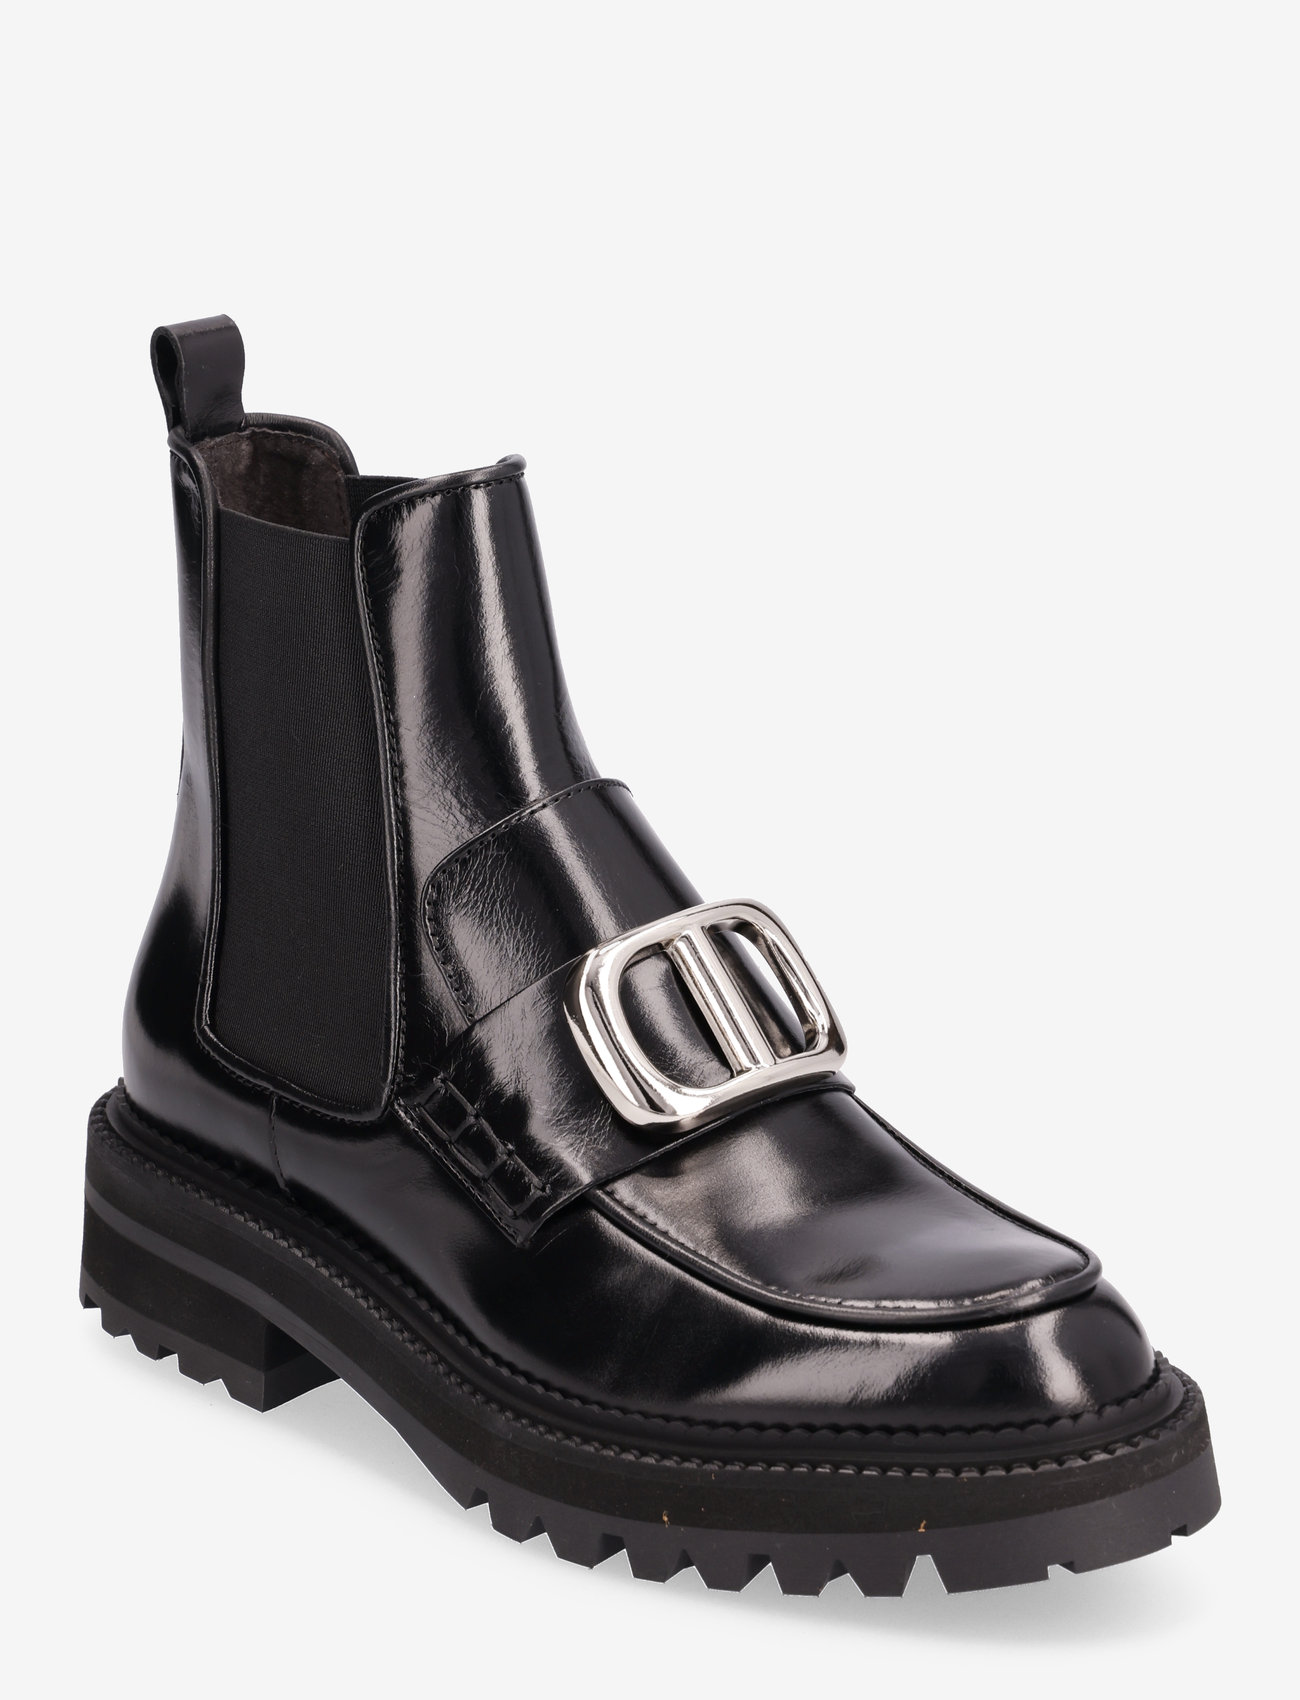 Billi Bi - Boots - chelsea boots - black desire/silver - 0